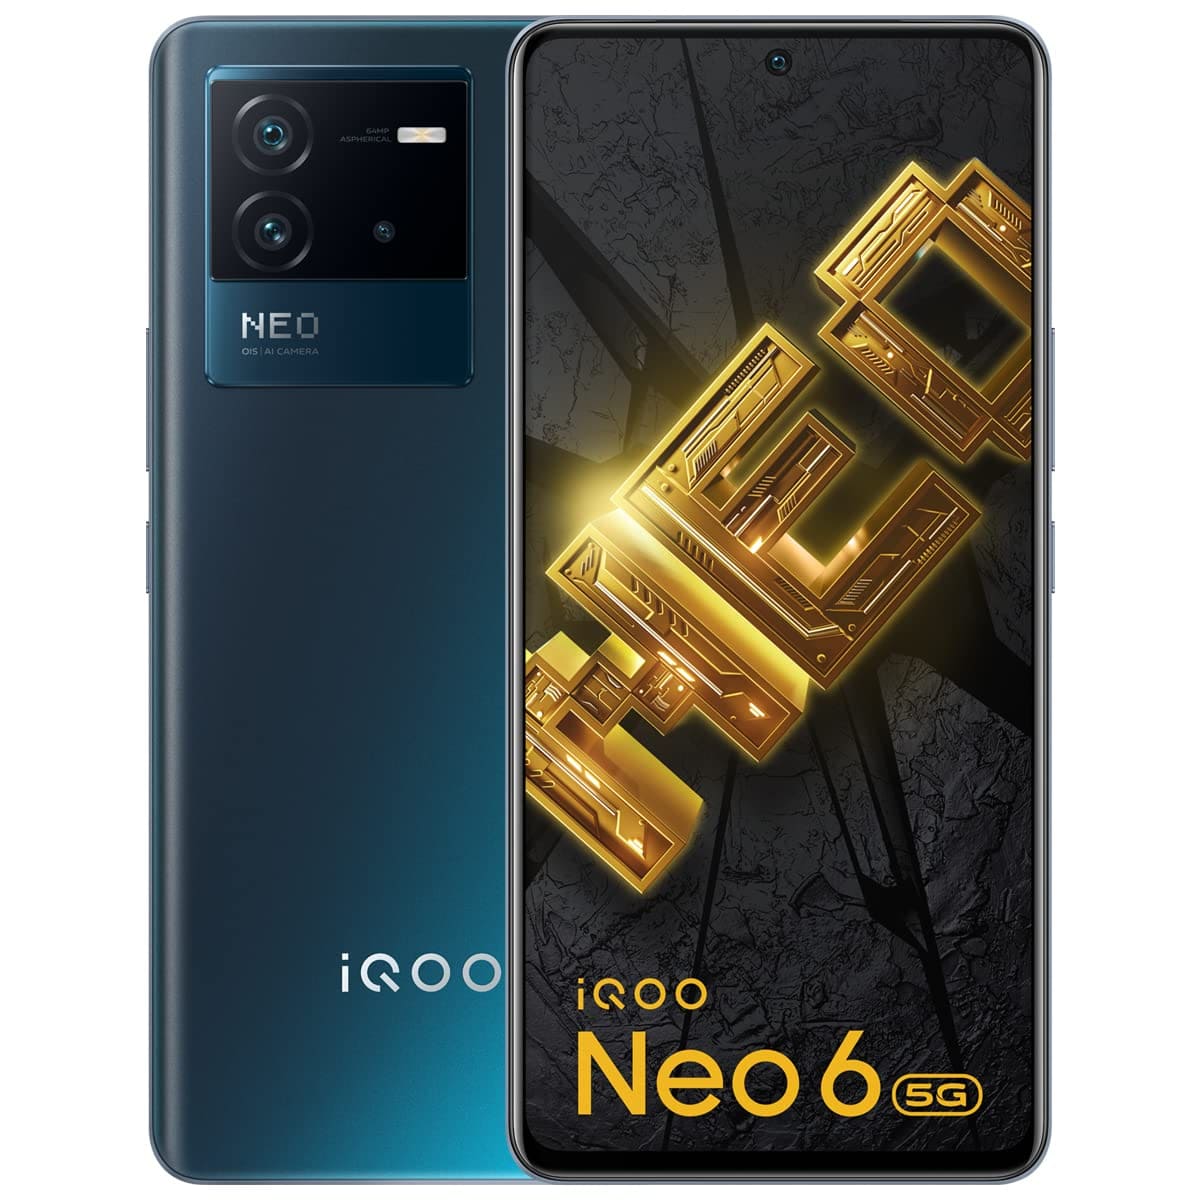 IQOO Neo 6 is best smartphone below 30000